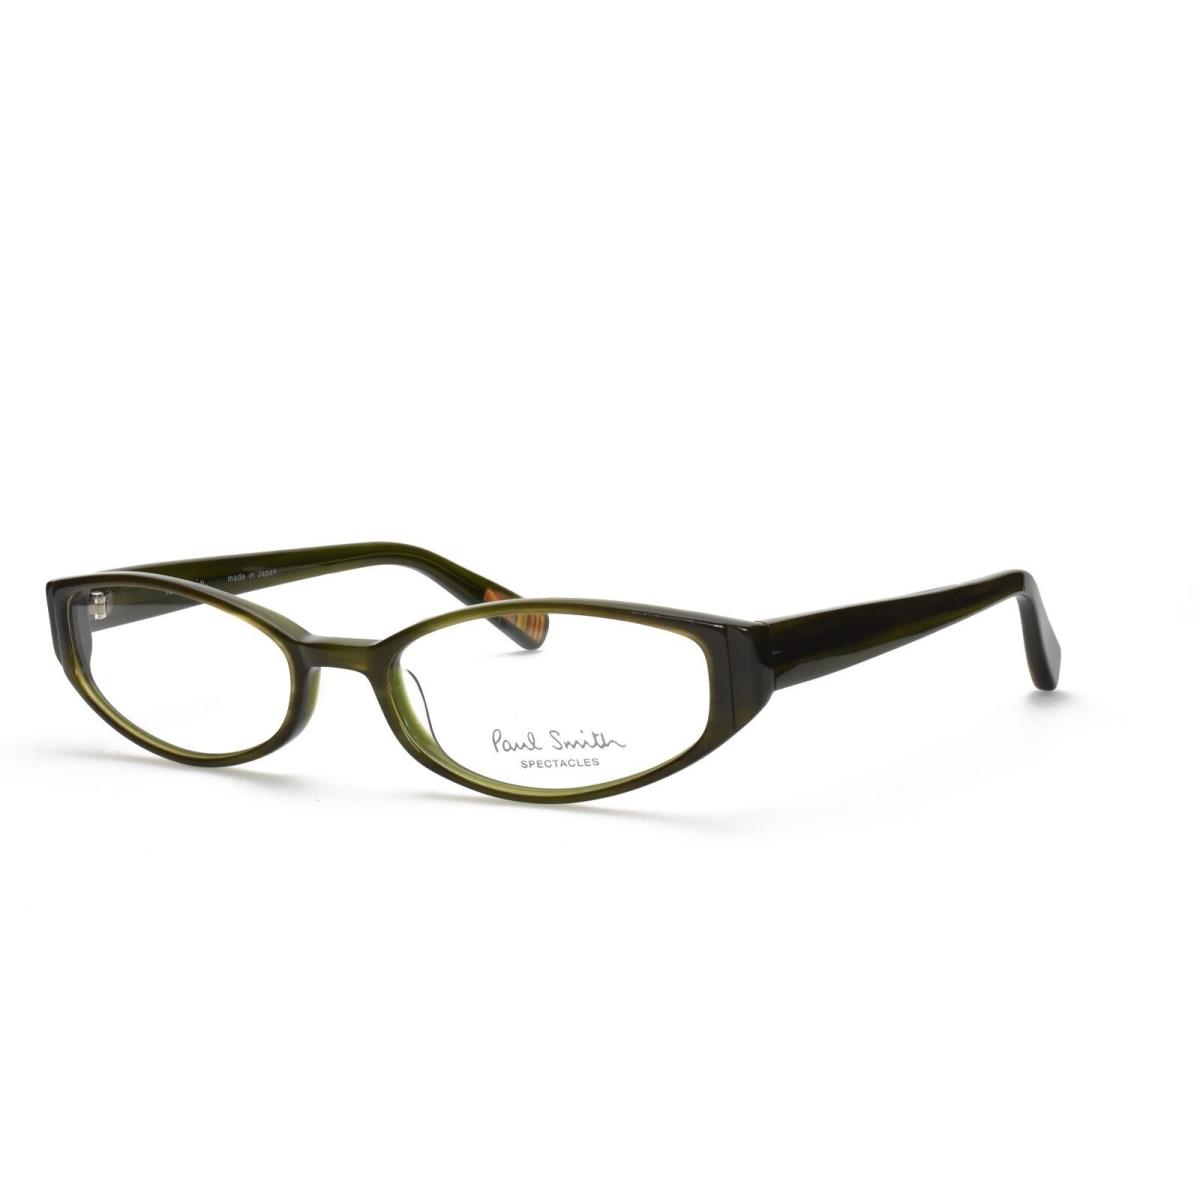 Paul Smith 281 Env 51-17-135 Olive Vtg Displayed Vintage Eyeglasses Frames